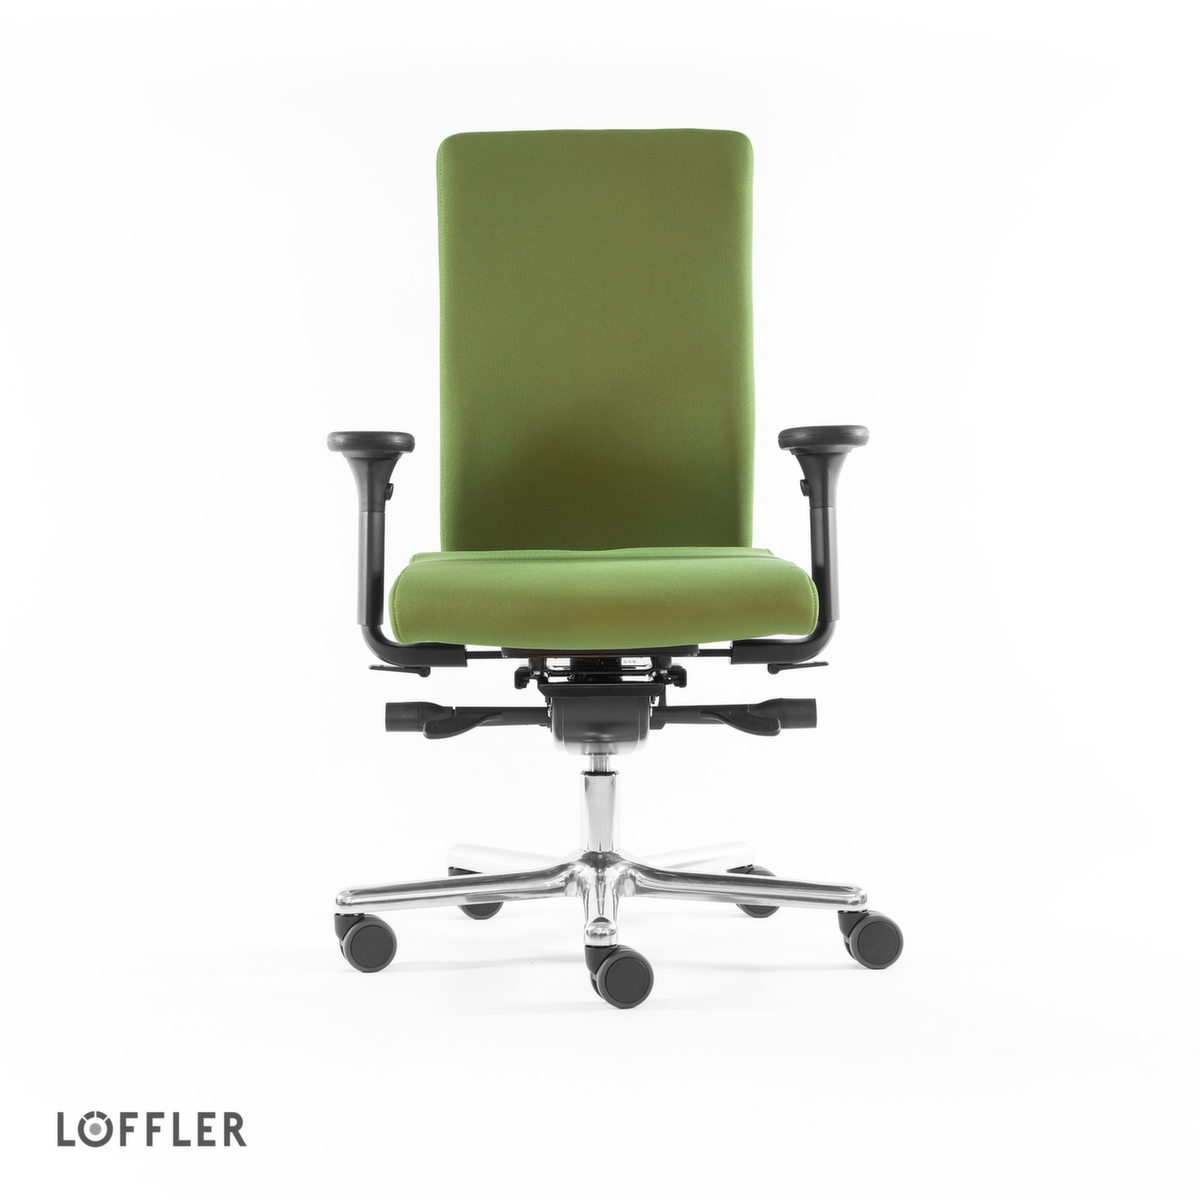 Löffler Bürodrehstuhl mit viskoelastischem Sitz, grün Standard 2 ZOOM